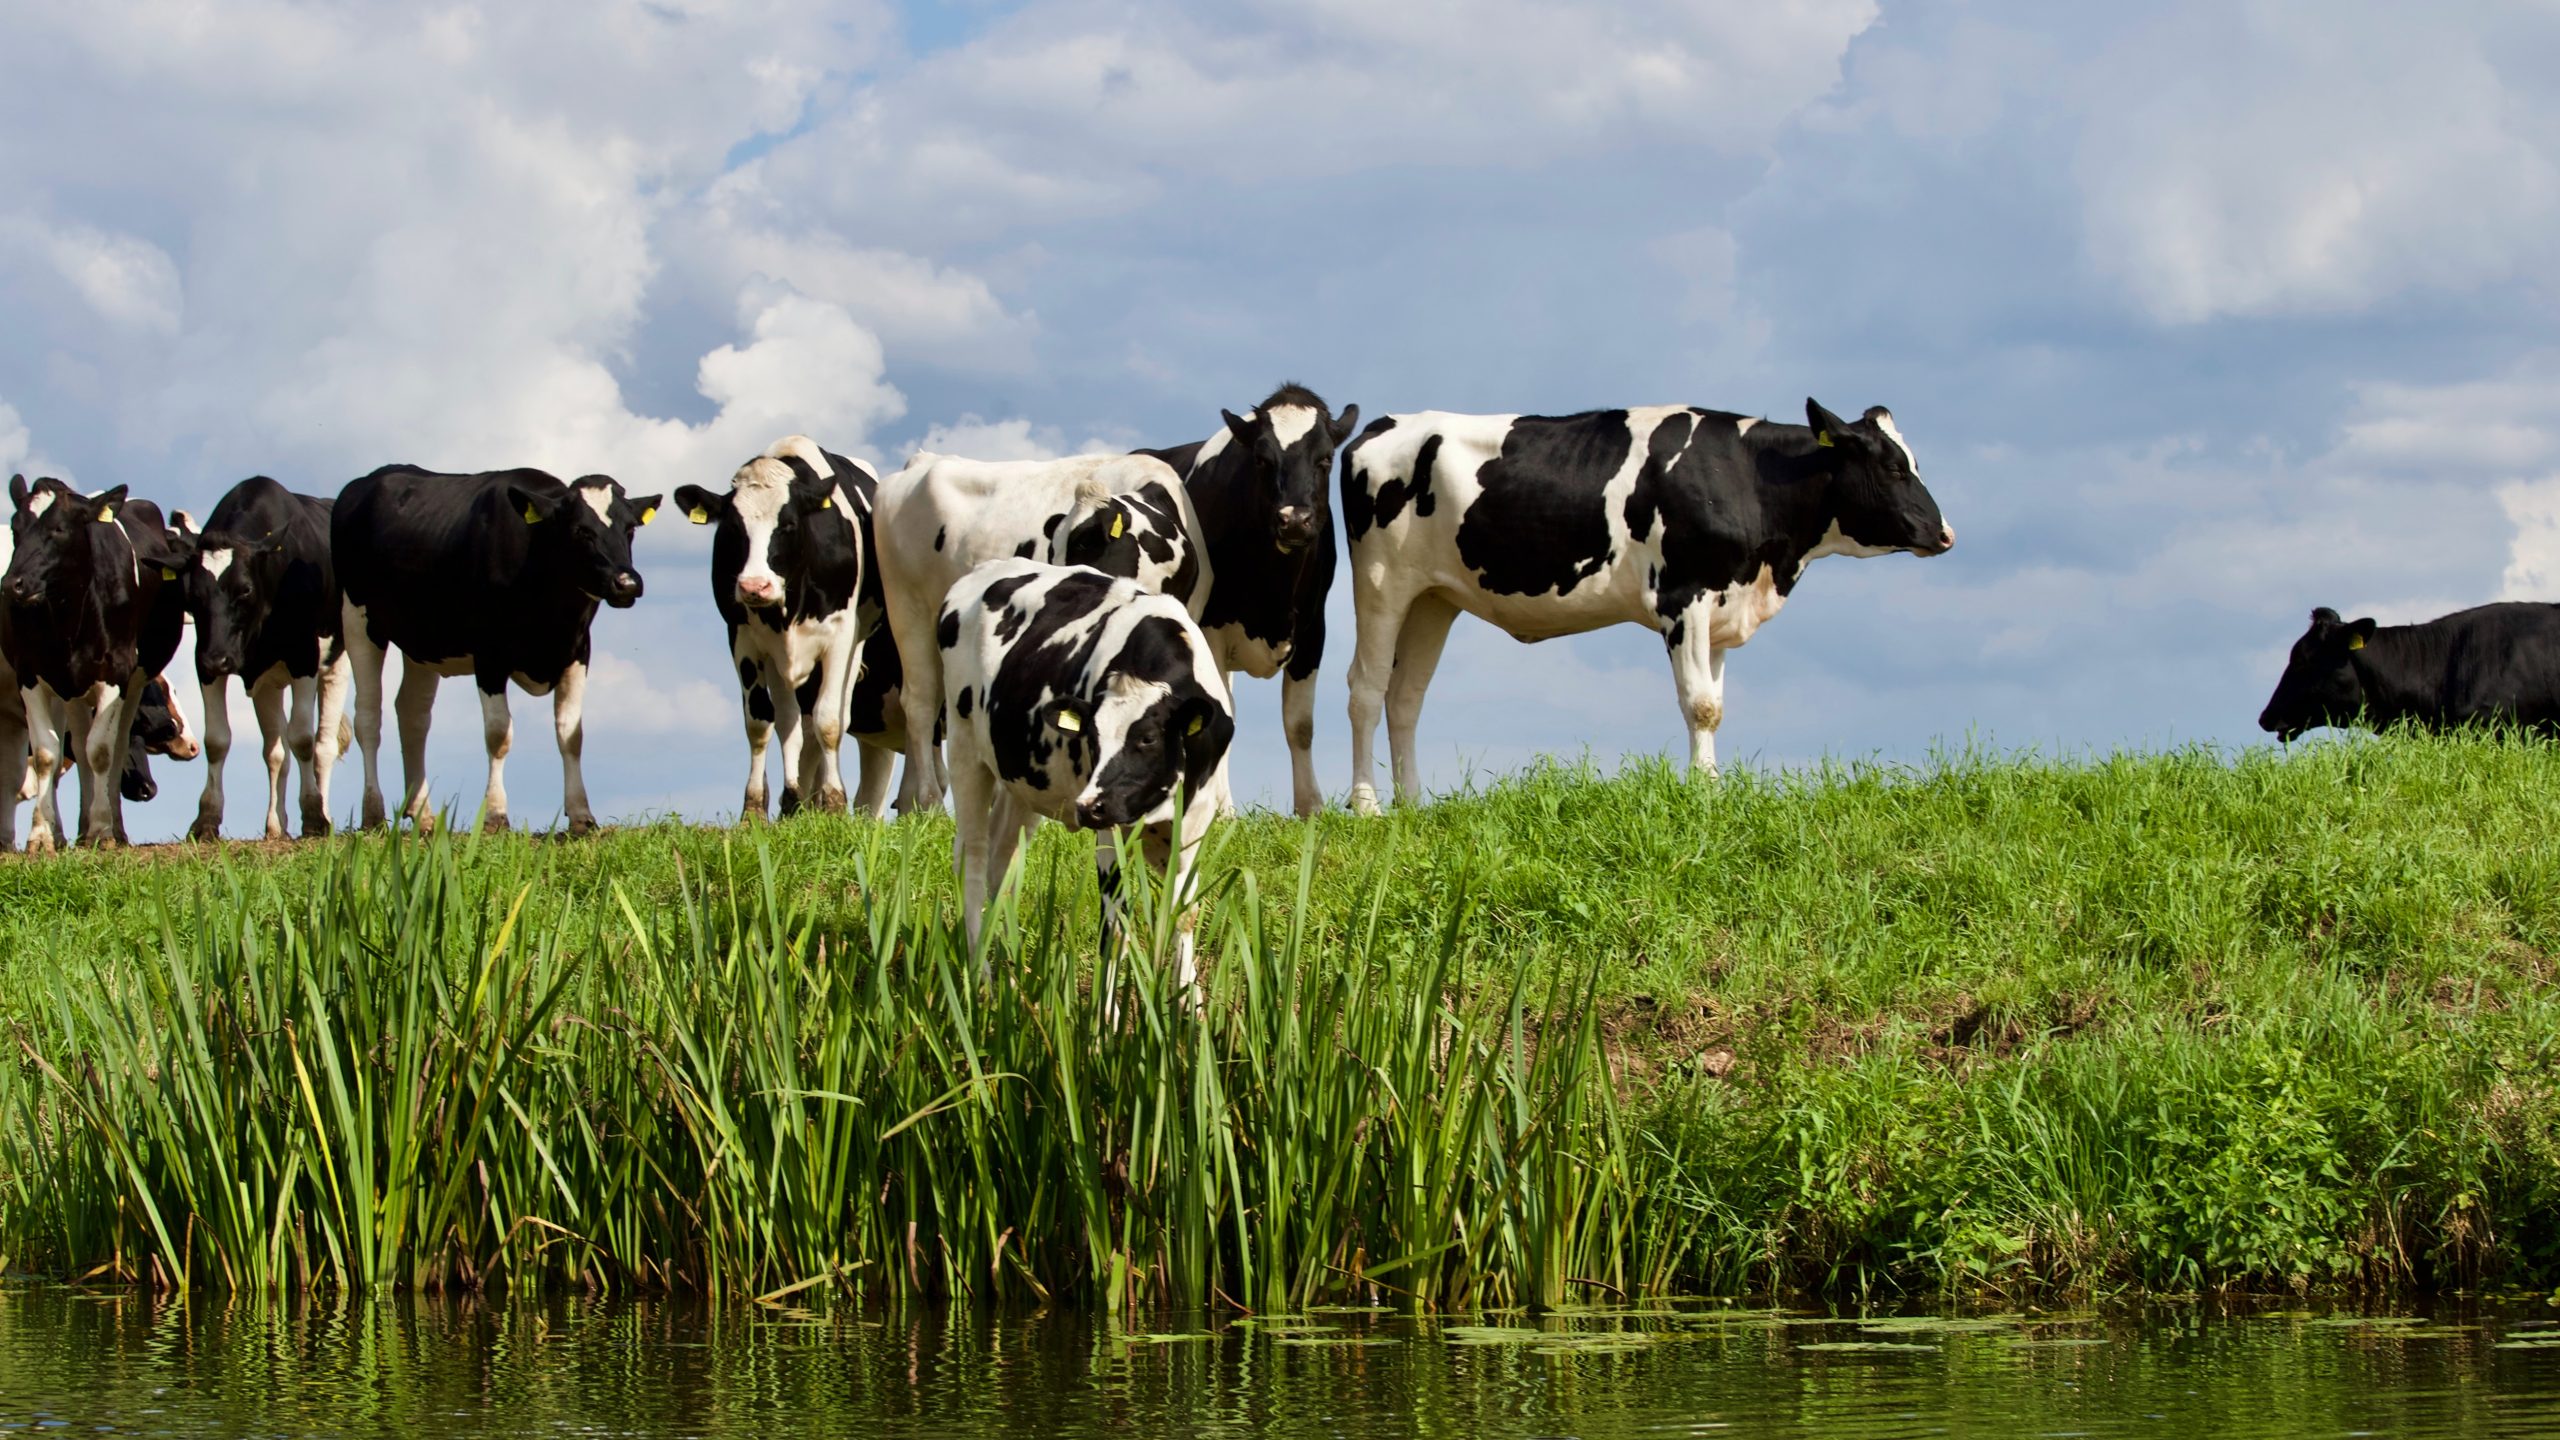 Hermana, cayó la ley: Granjero intenta denunciar a sus vacas por no dar leche 